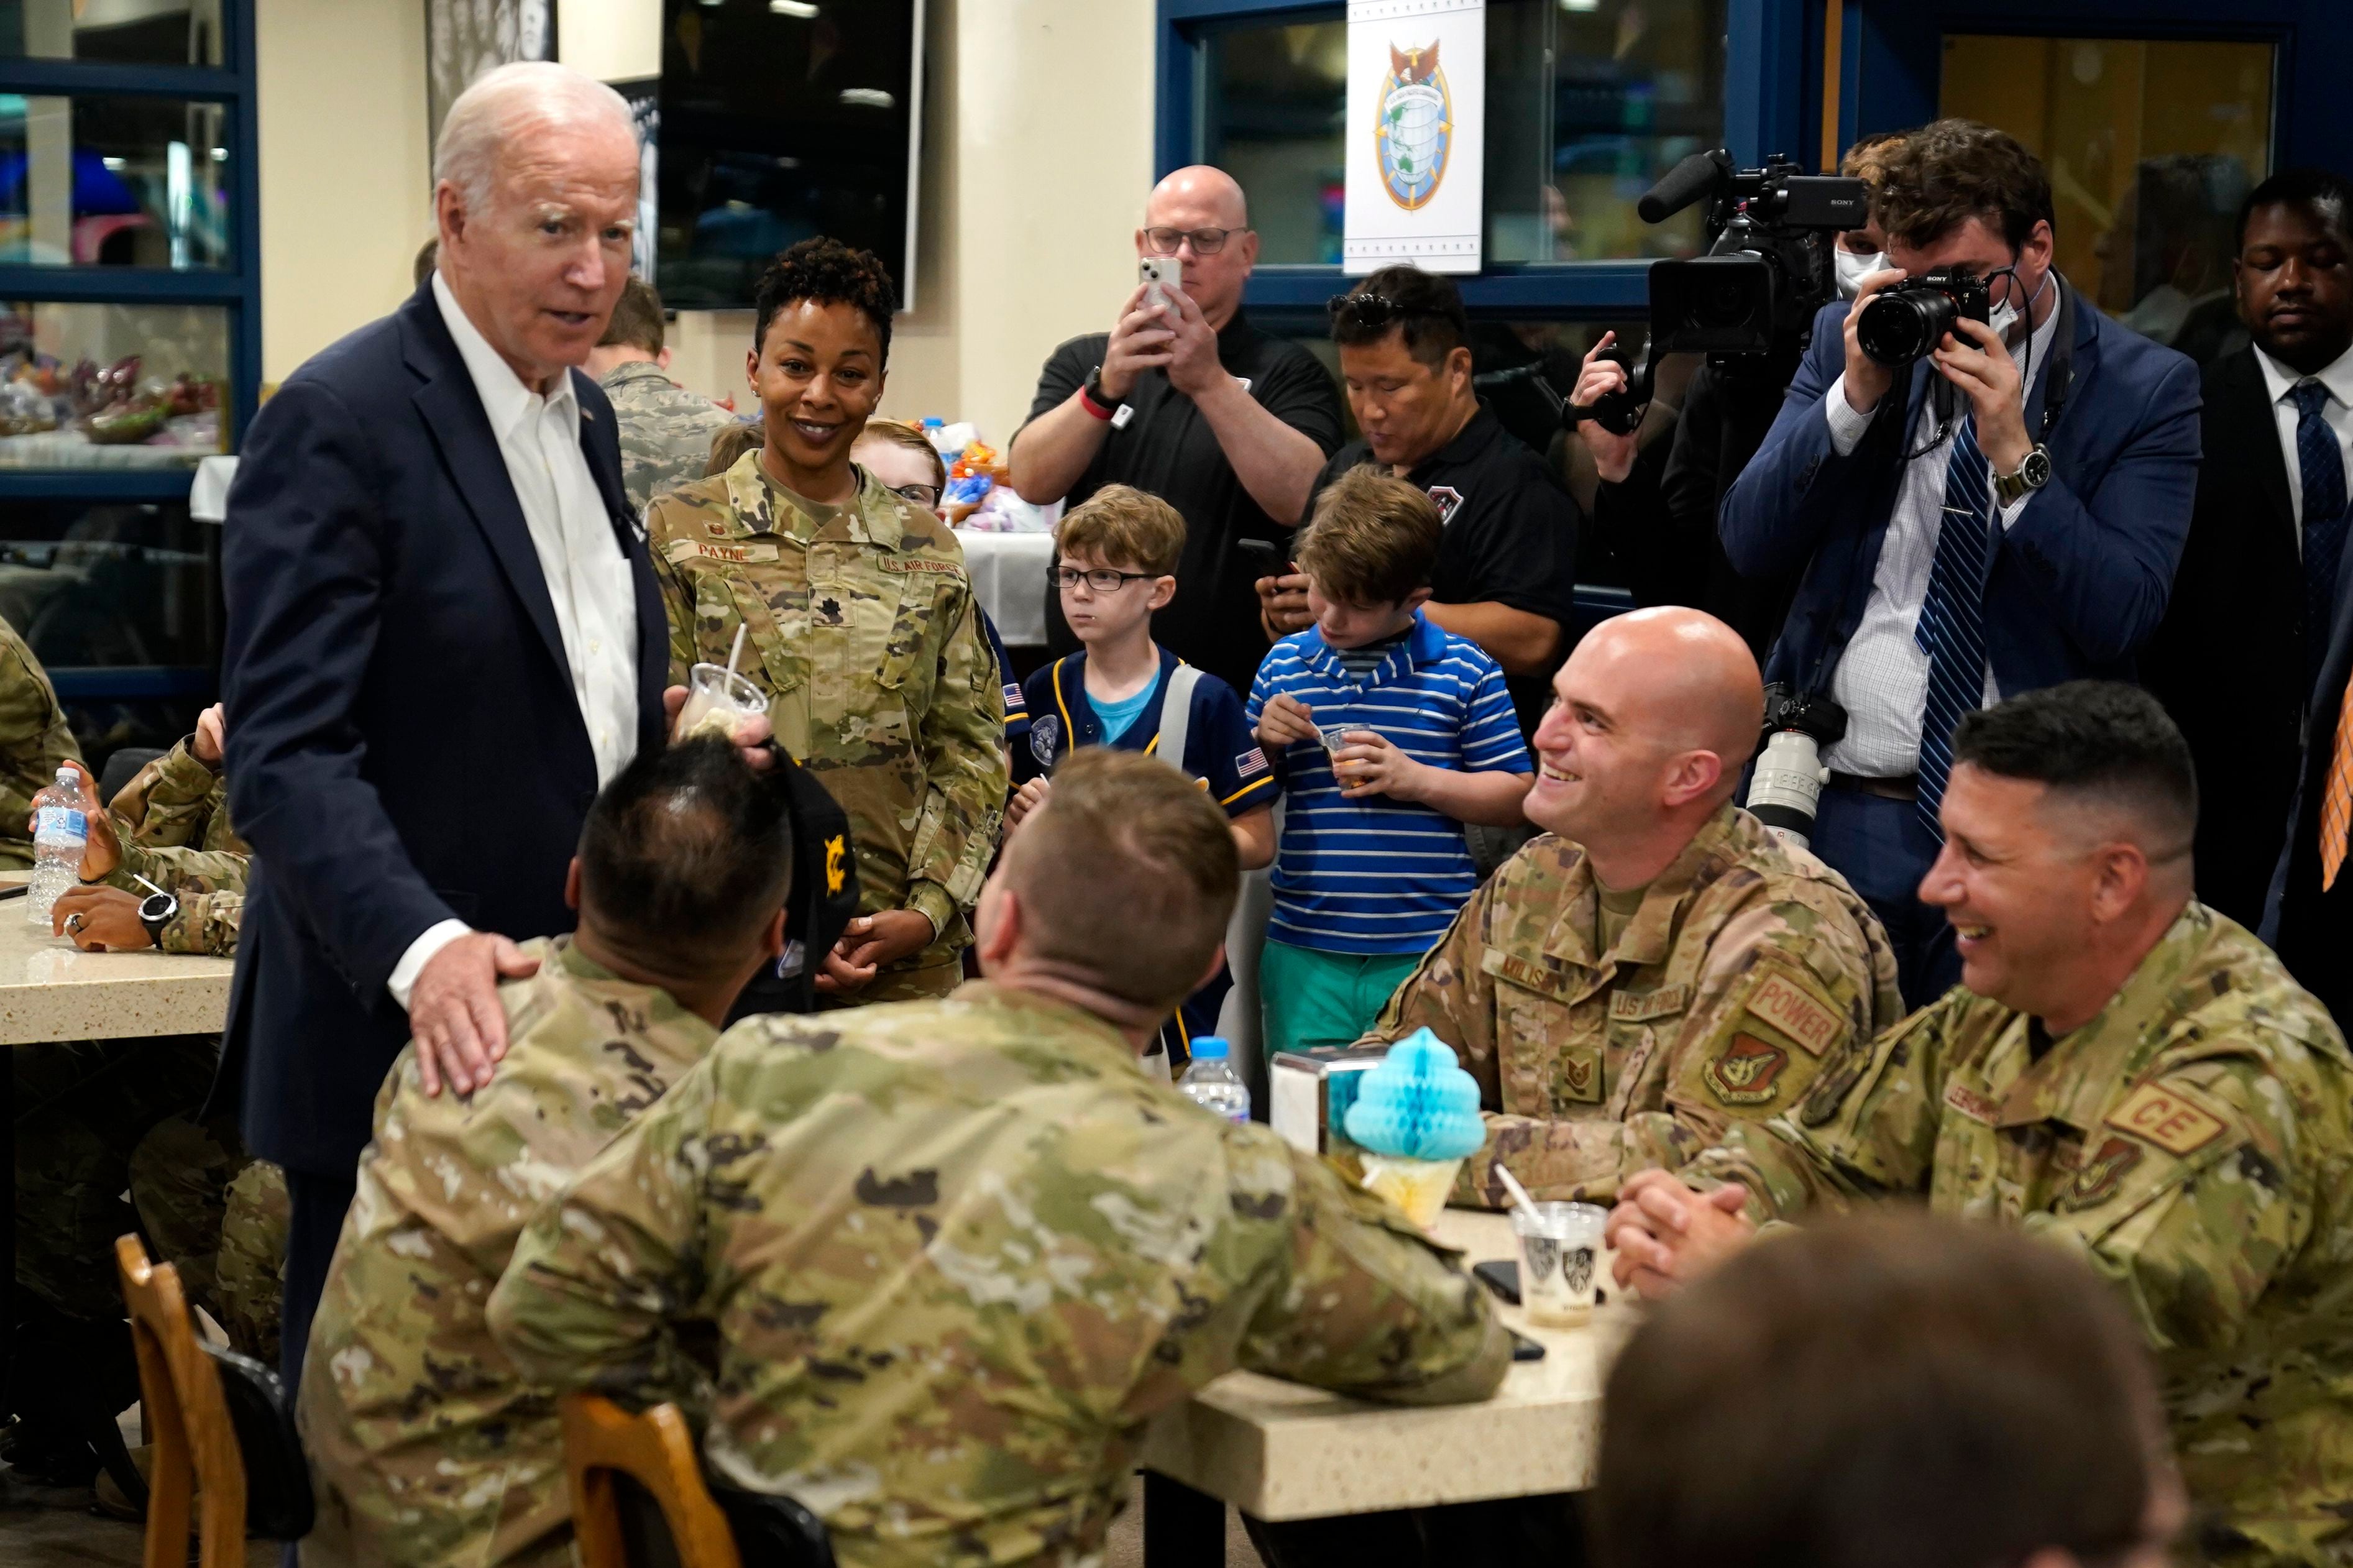 Biden pushes economic, security aims as he ends SKorea visit